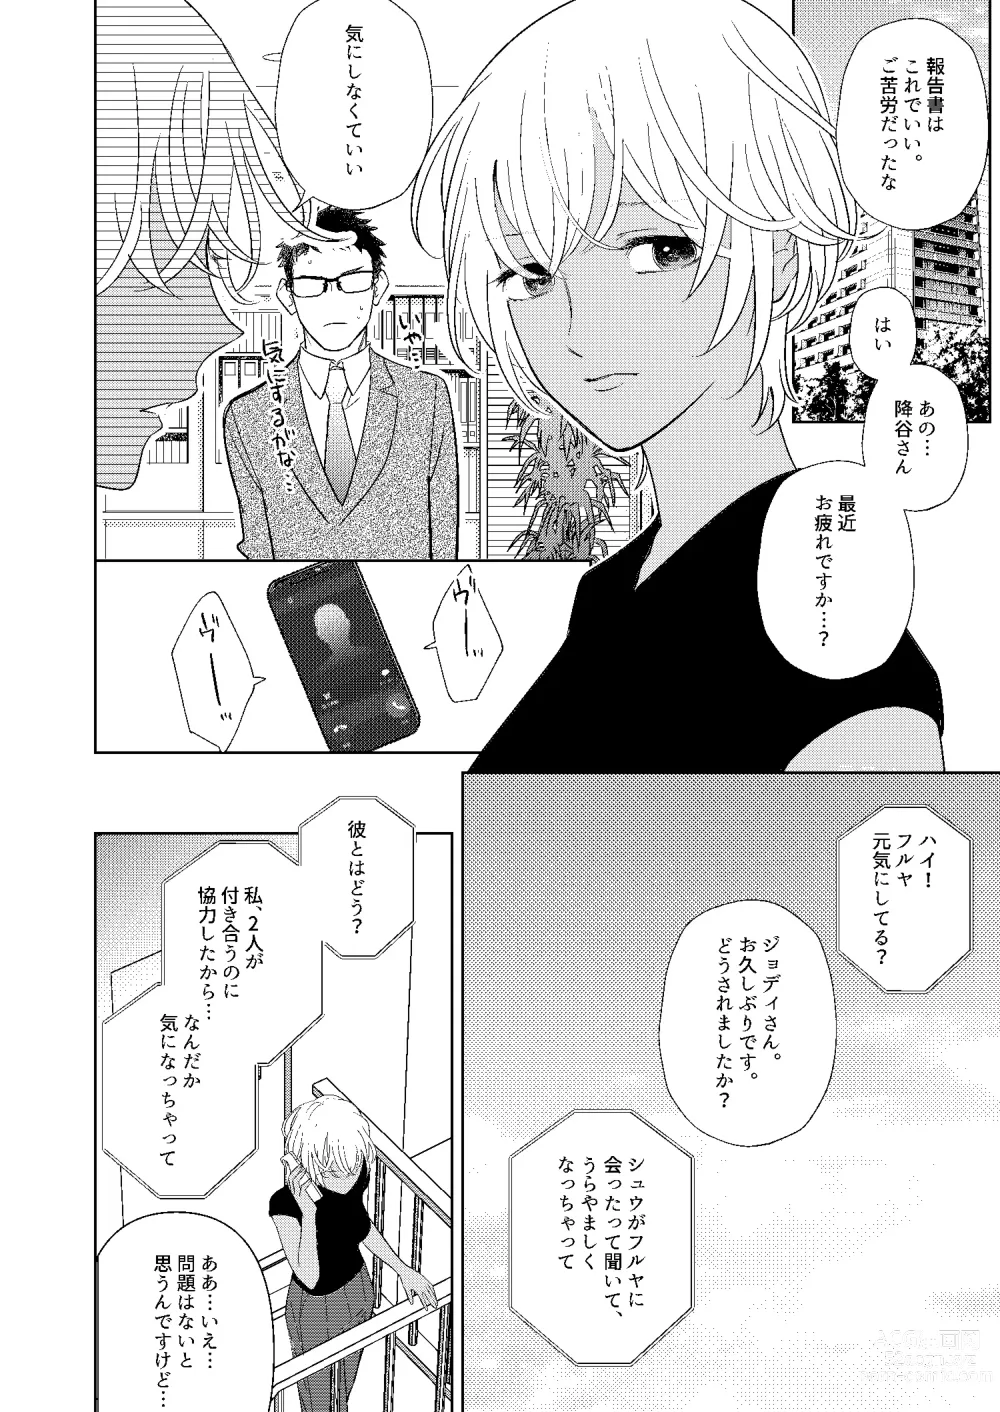 Page 11 of doujinshi Jotaika Akayasu